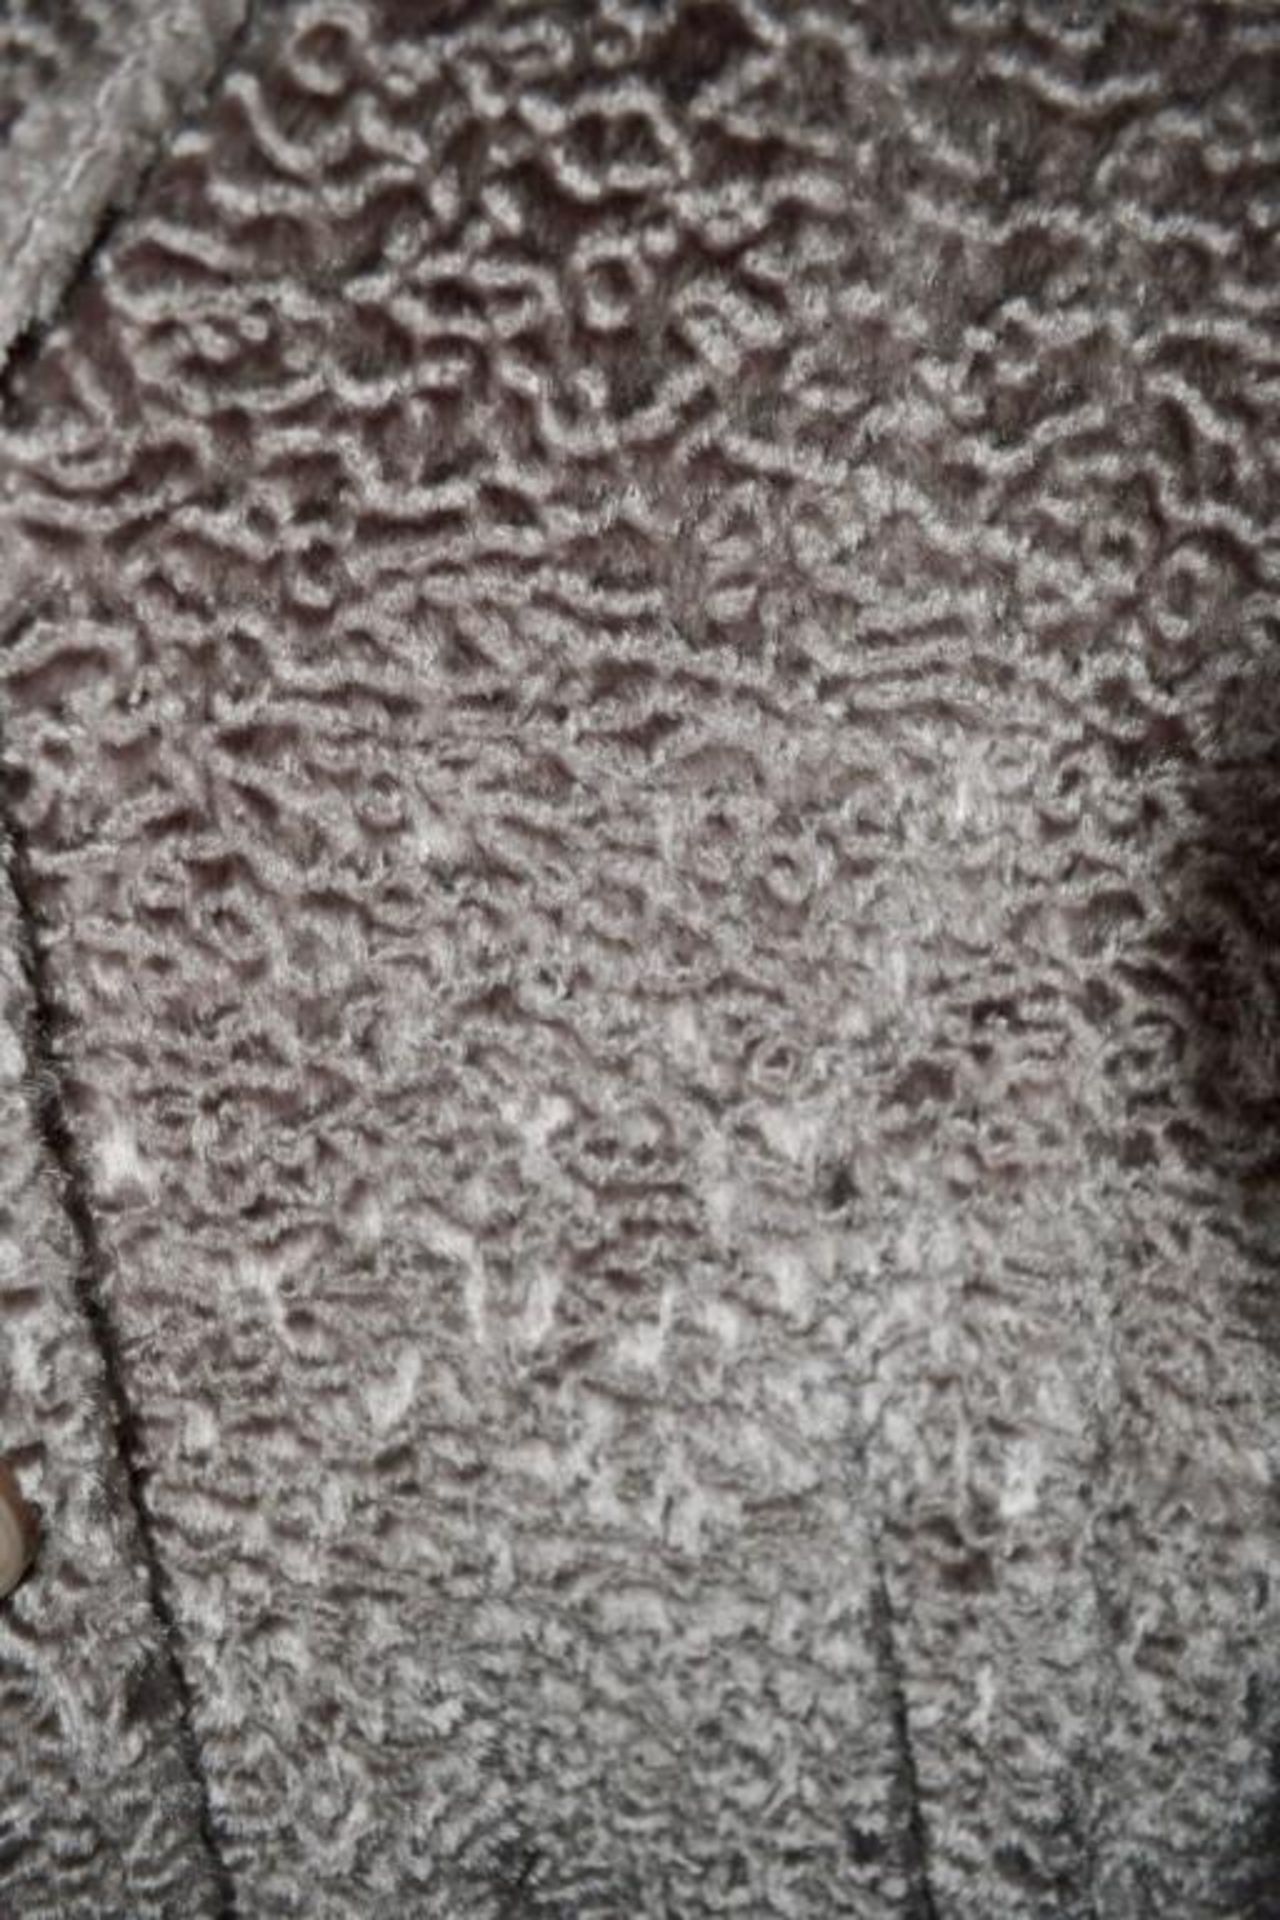 1 x Steilmann Womens Vintage-Style Faux Fur Winter Coat - Colour: Mocha - Size 12 - CL210 - New Samp - Image 3 of 4